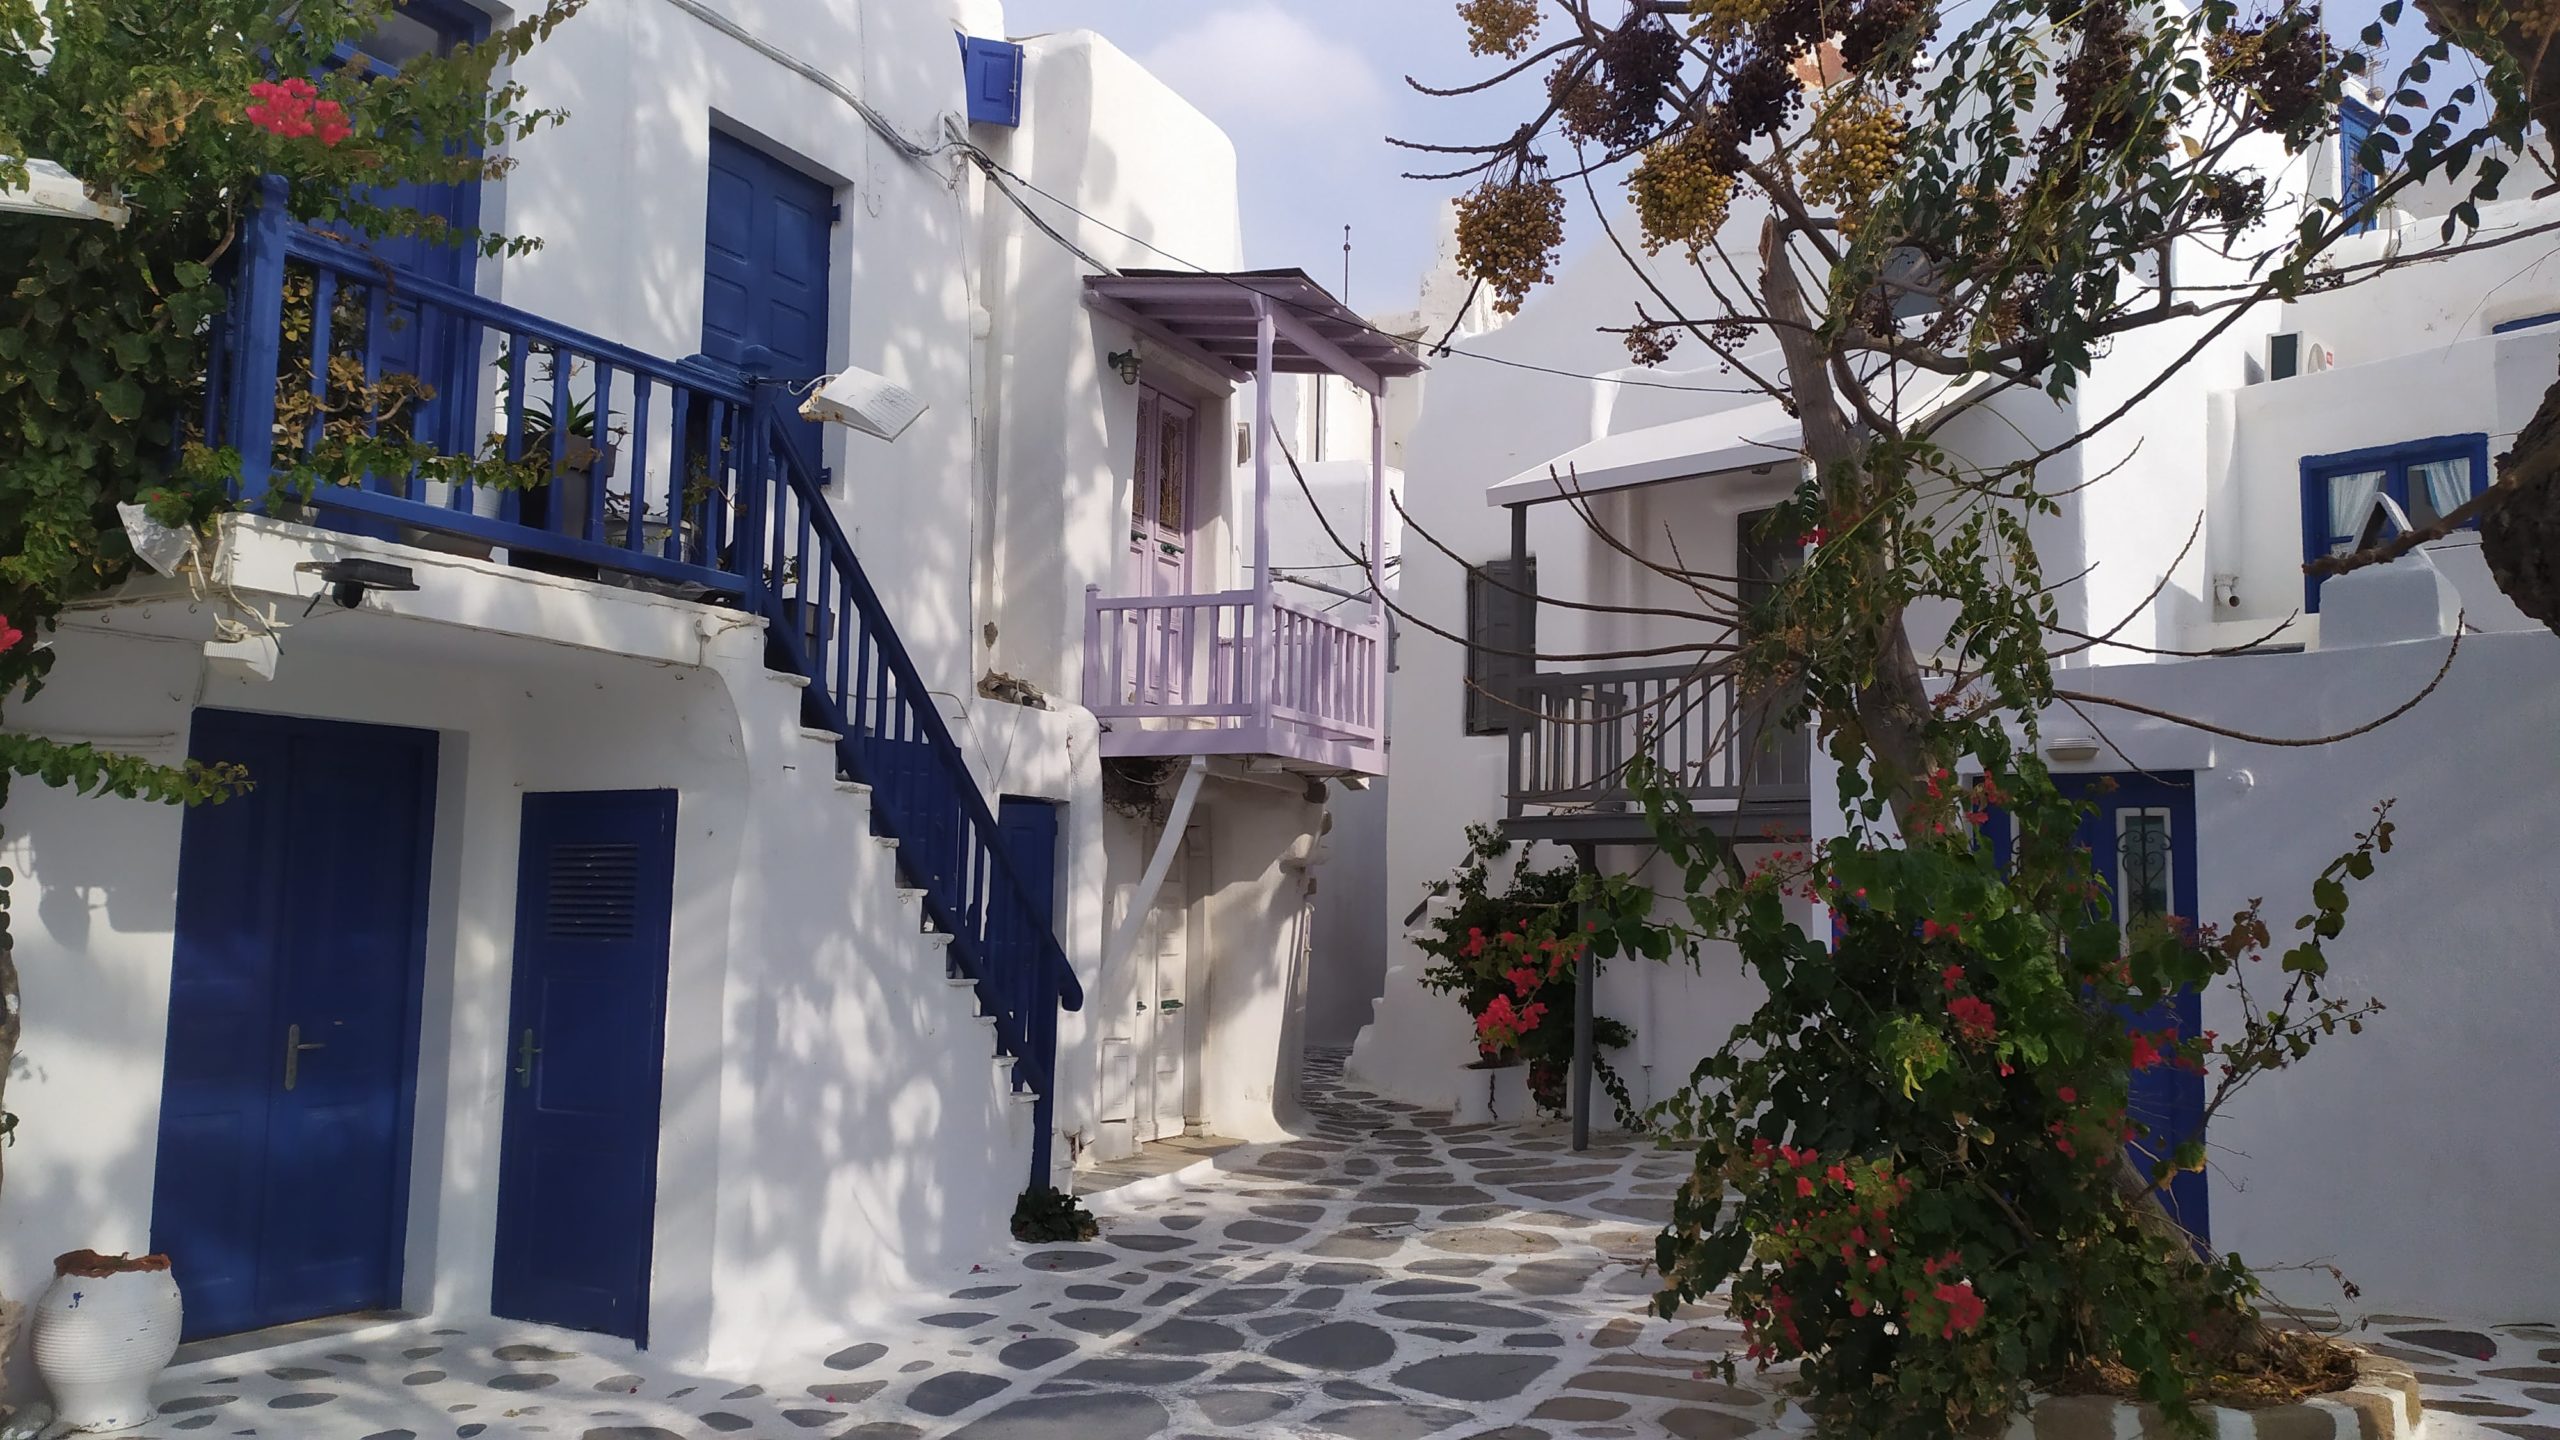 Les ruelles de Mykonos aux couleurs blanches et bleues 